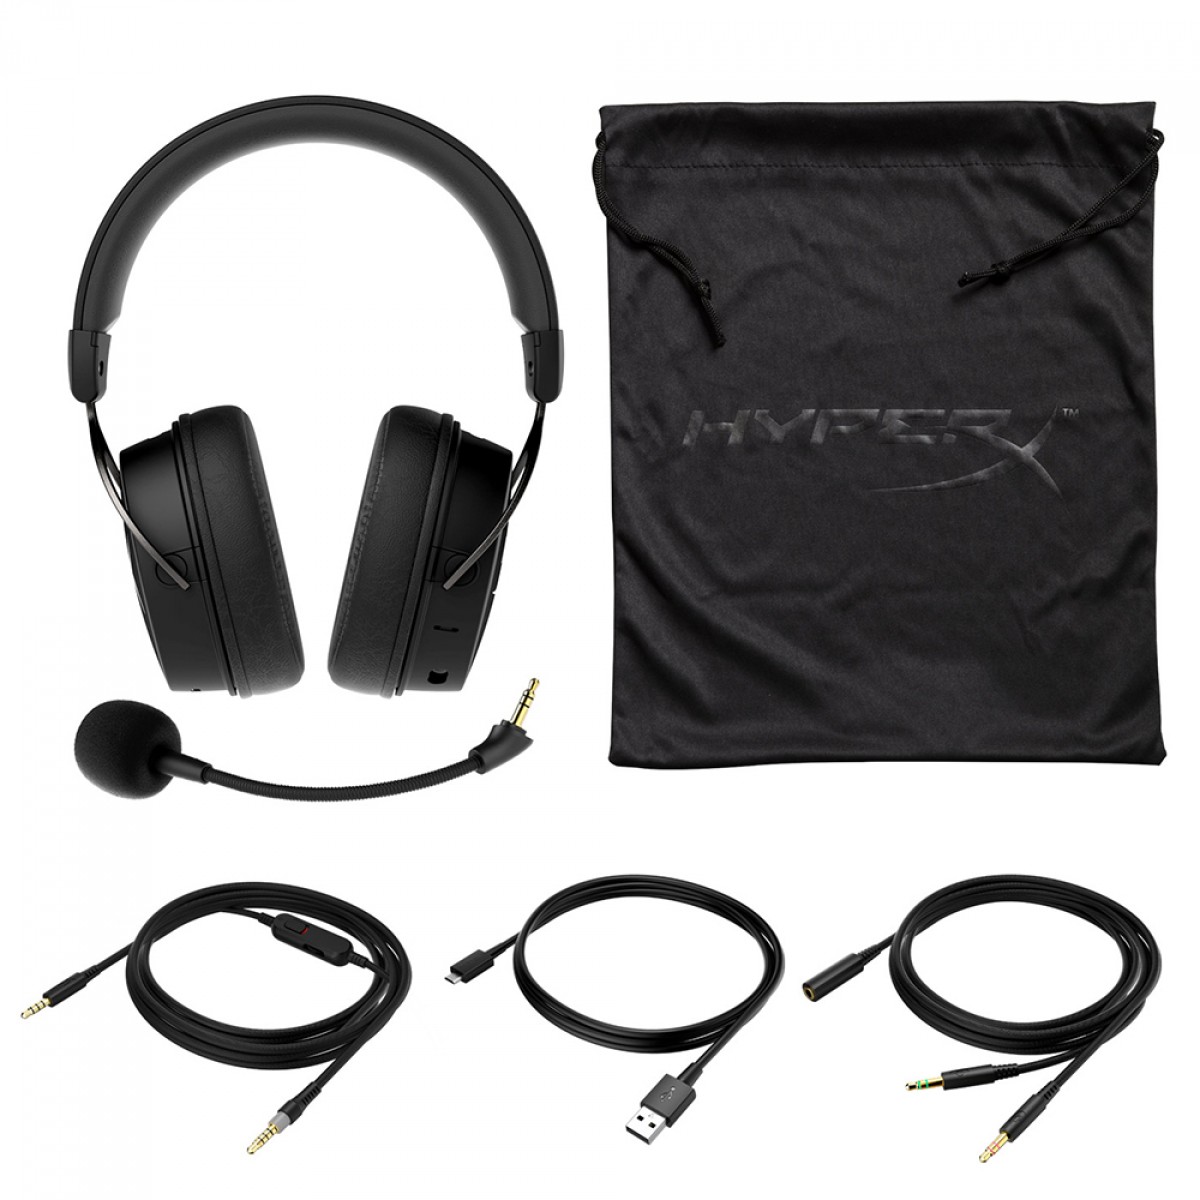 Headset Gamer HyperX Cloud Mix, Bluetooth, Drivers 40mm, Múltiplas Plataformas, P2 e P3, Black, HX-HSCAM-GM